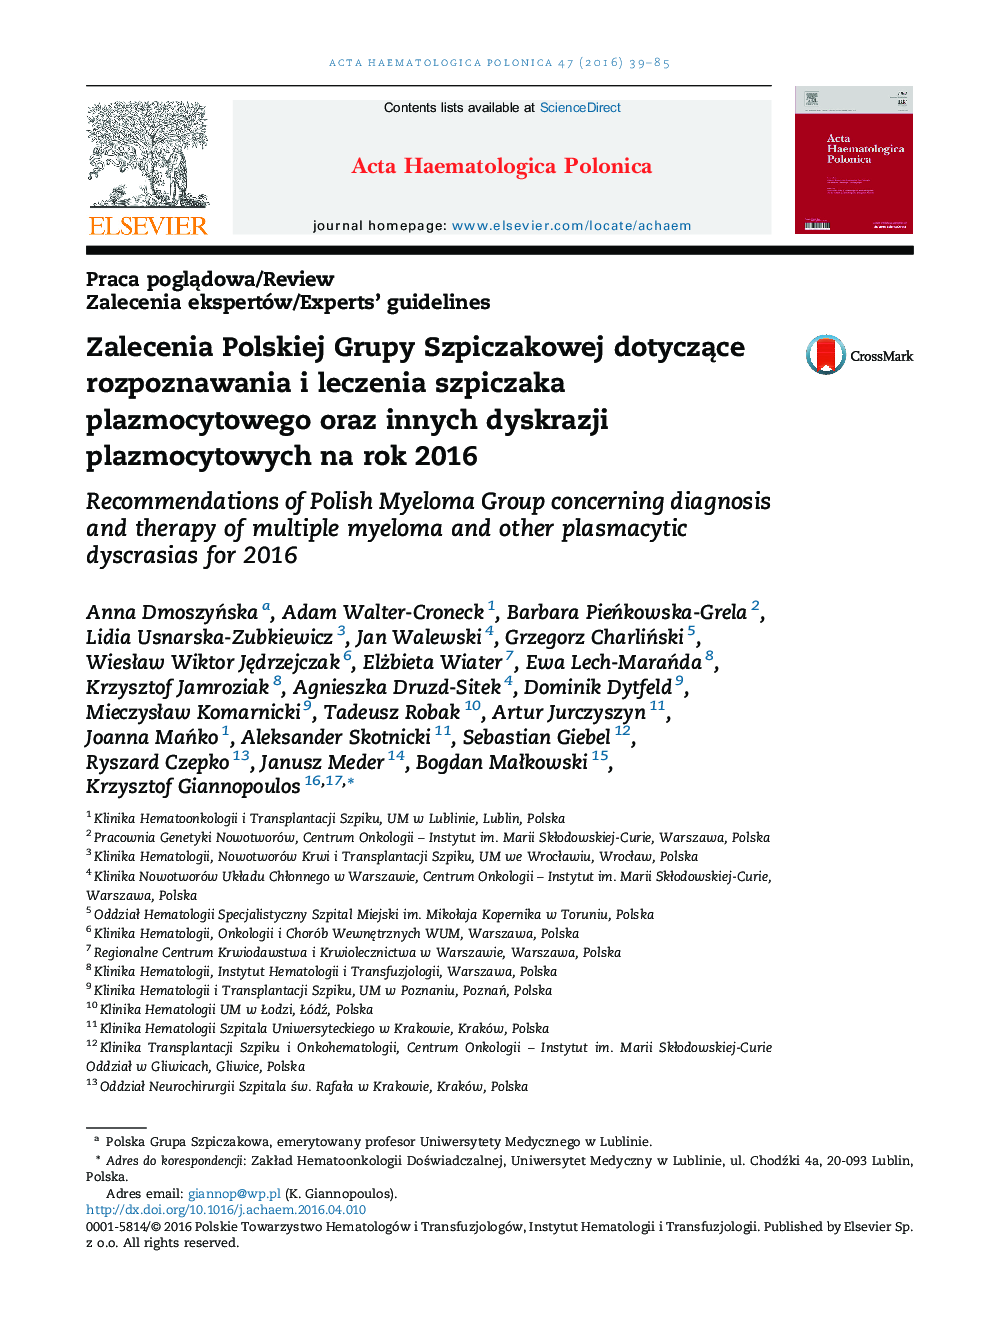 Zalecenia Polskiej Grupy Szpiczakowej dotyczące rozpoznawania i leczenia szpiczaka plazmocytowego oraz innych dyskrazji plazmocytowych na rok 2016